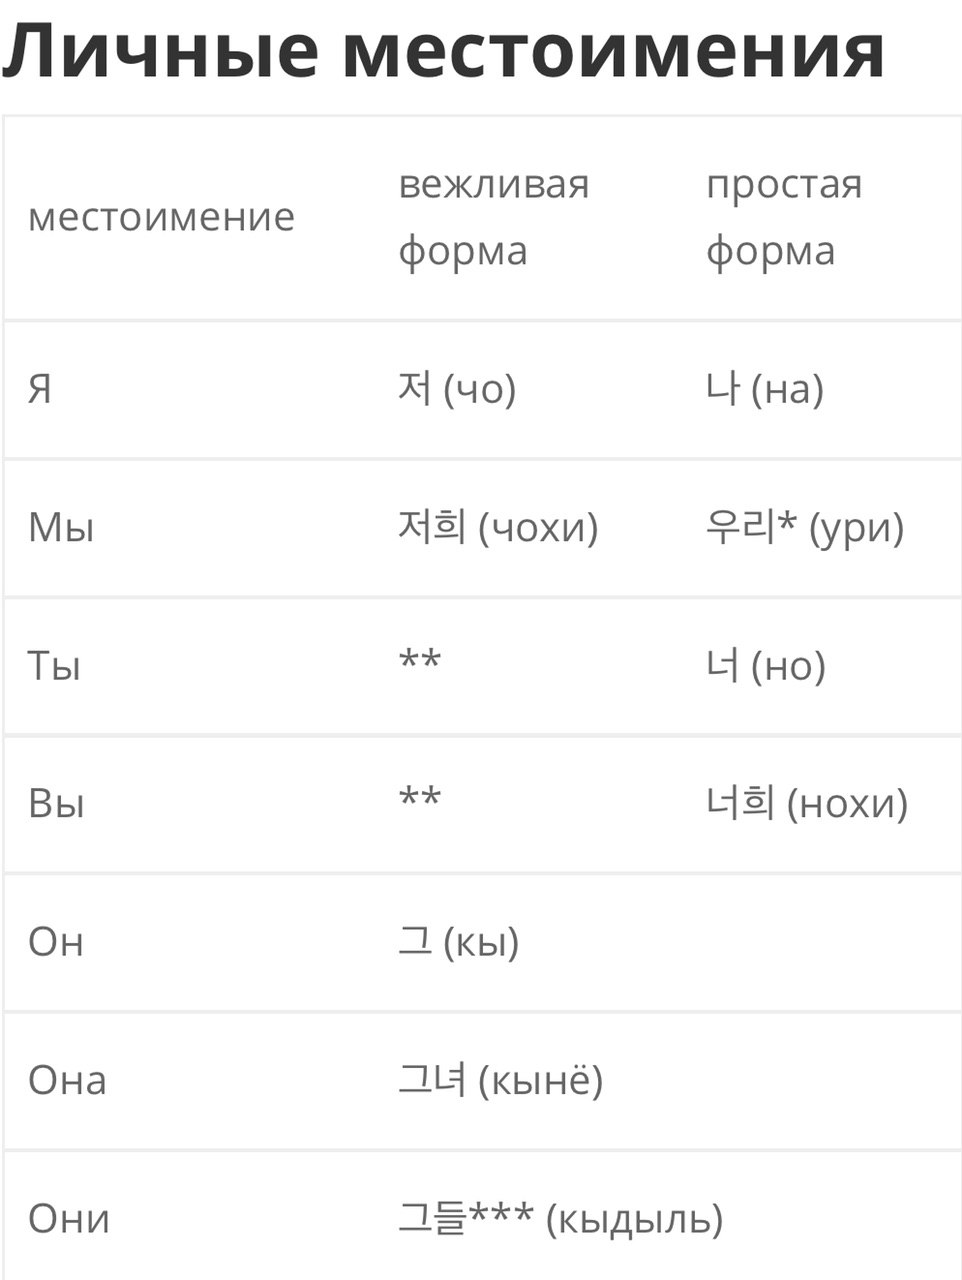 Местоимения в корейском языке таблица